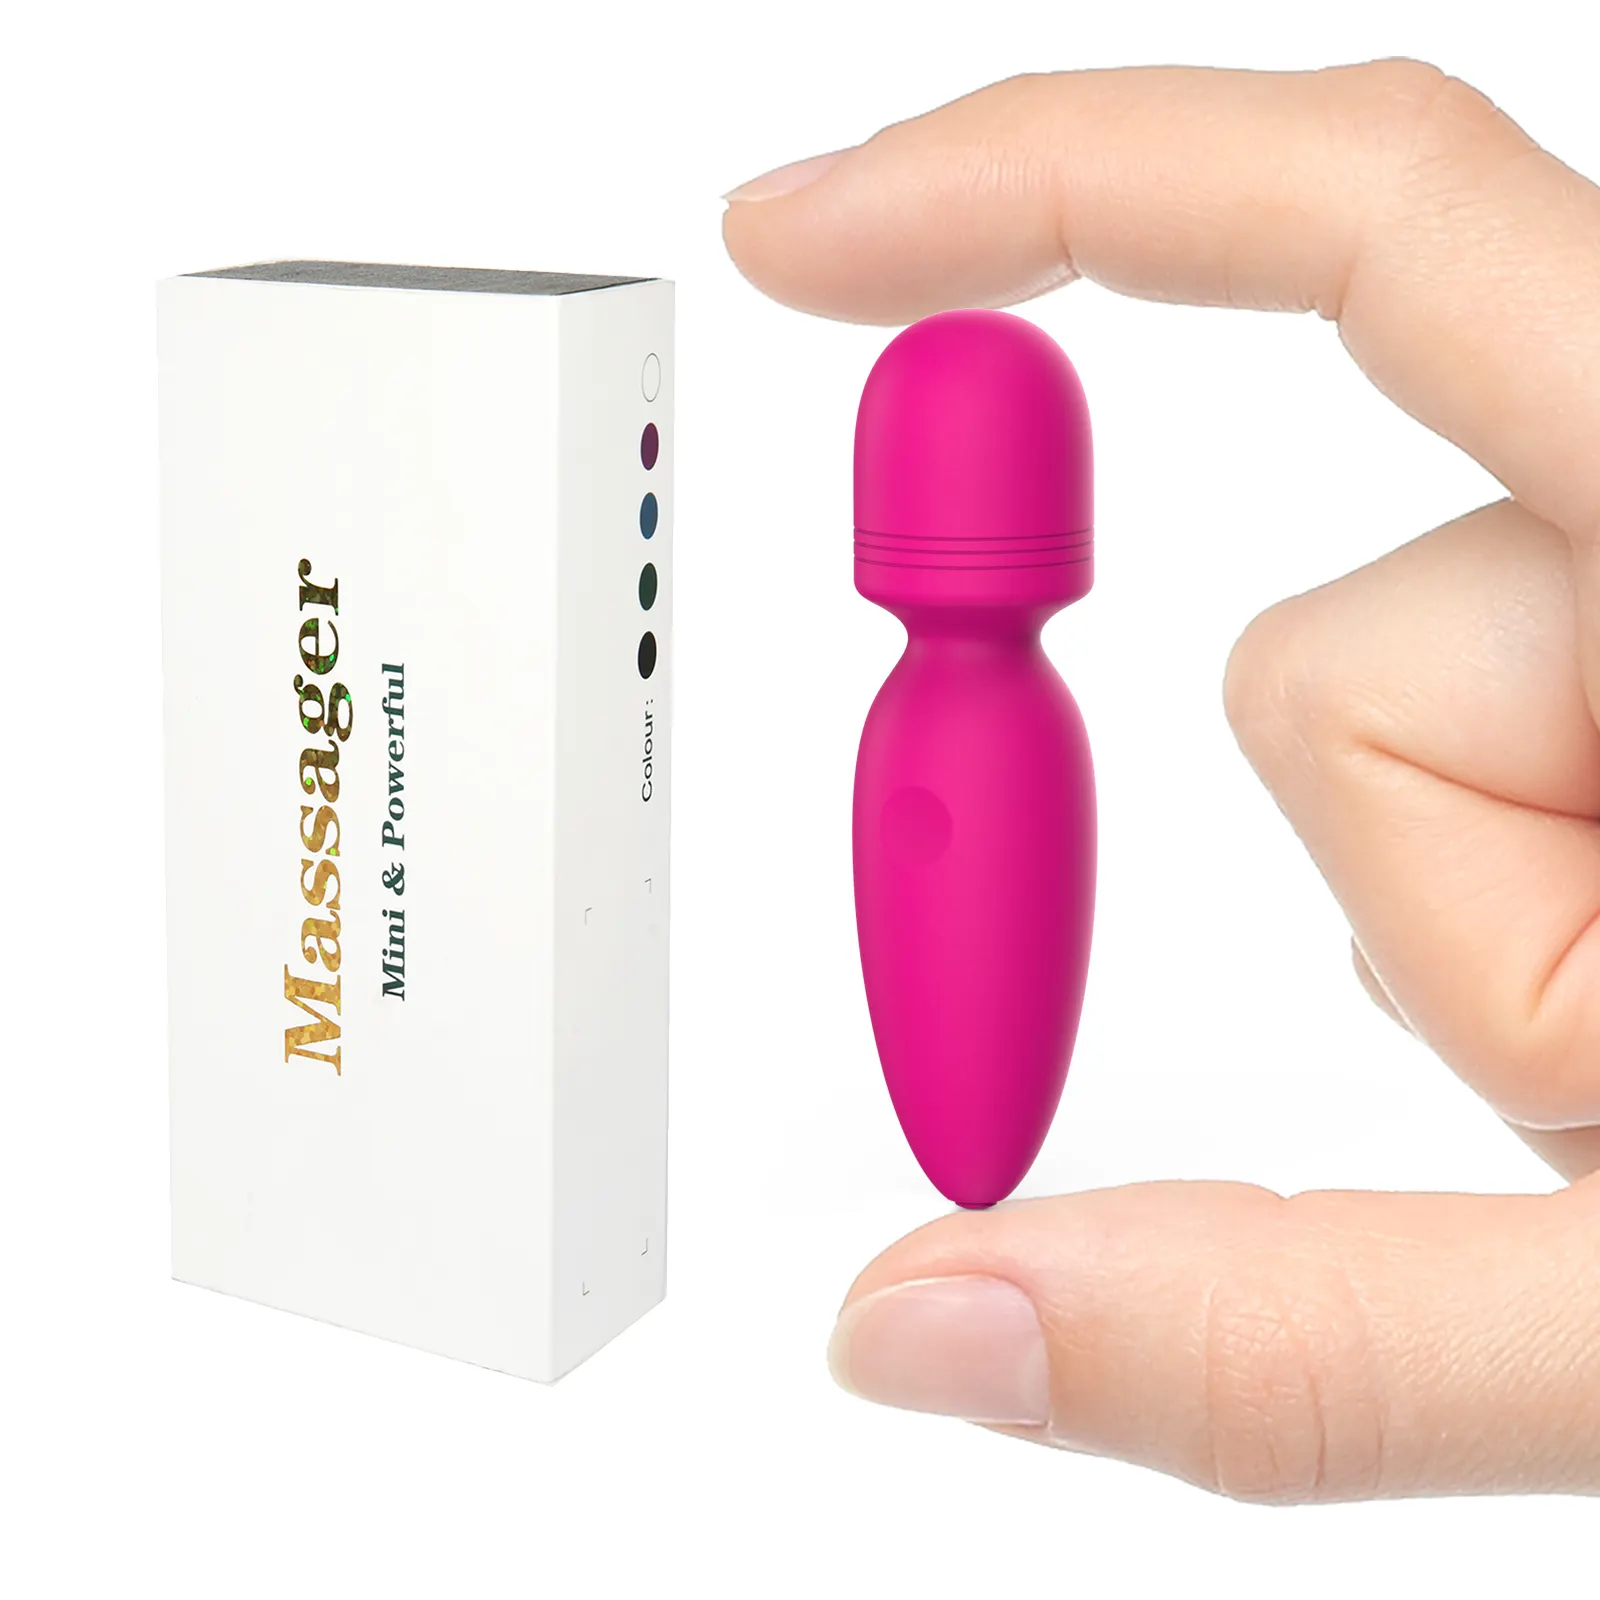 10 titreşim taşınabilir Mini kurşun vibratör kadın vajina stimülasyon vibratörler seks ürünleri kadın AV değnek masaj